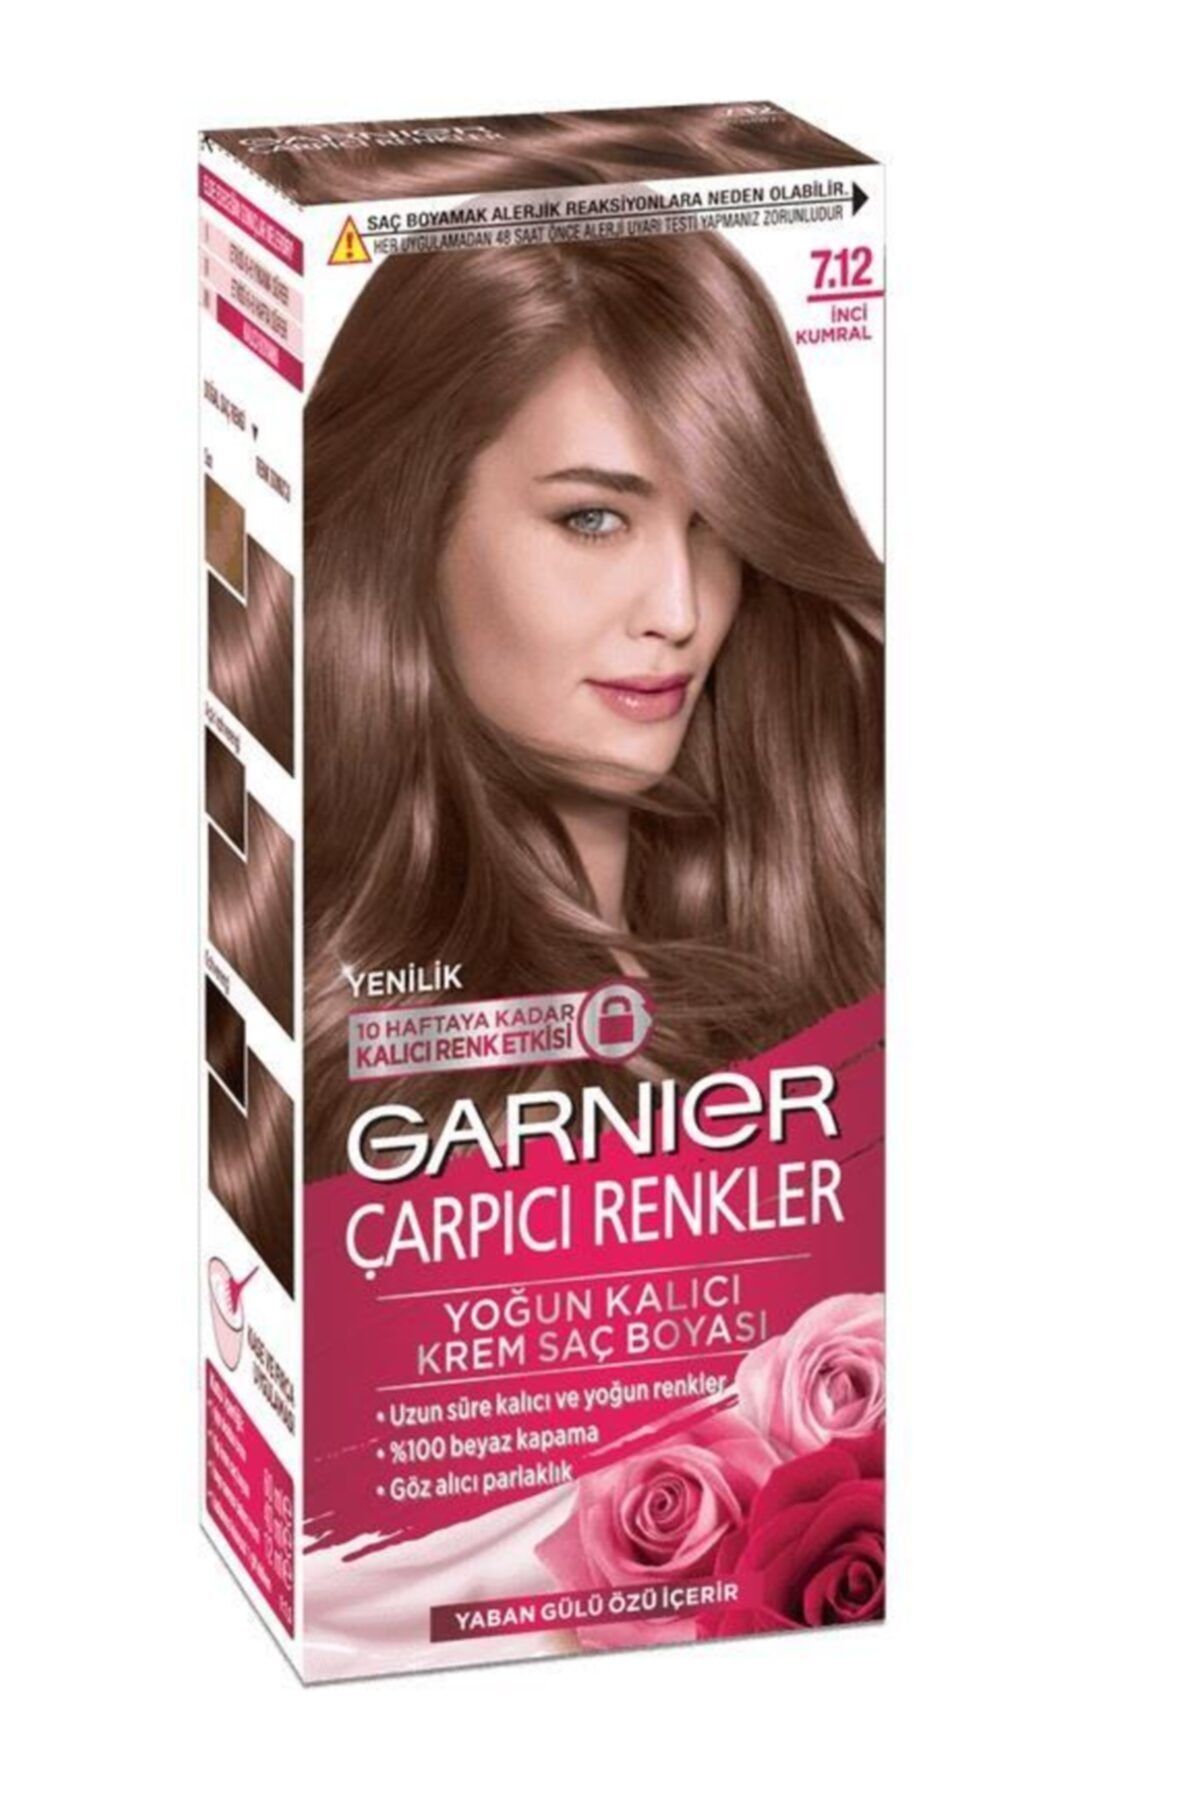 Garnier Inci Kumral Carpici Renkler Sac Boyasi 7 12 Fiyati Yorumlari Trendyol